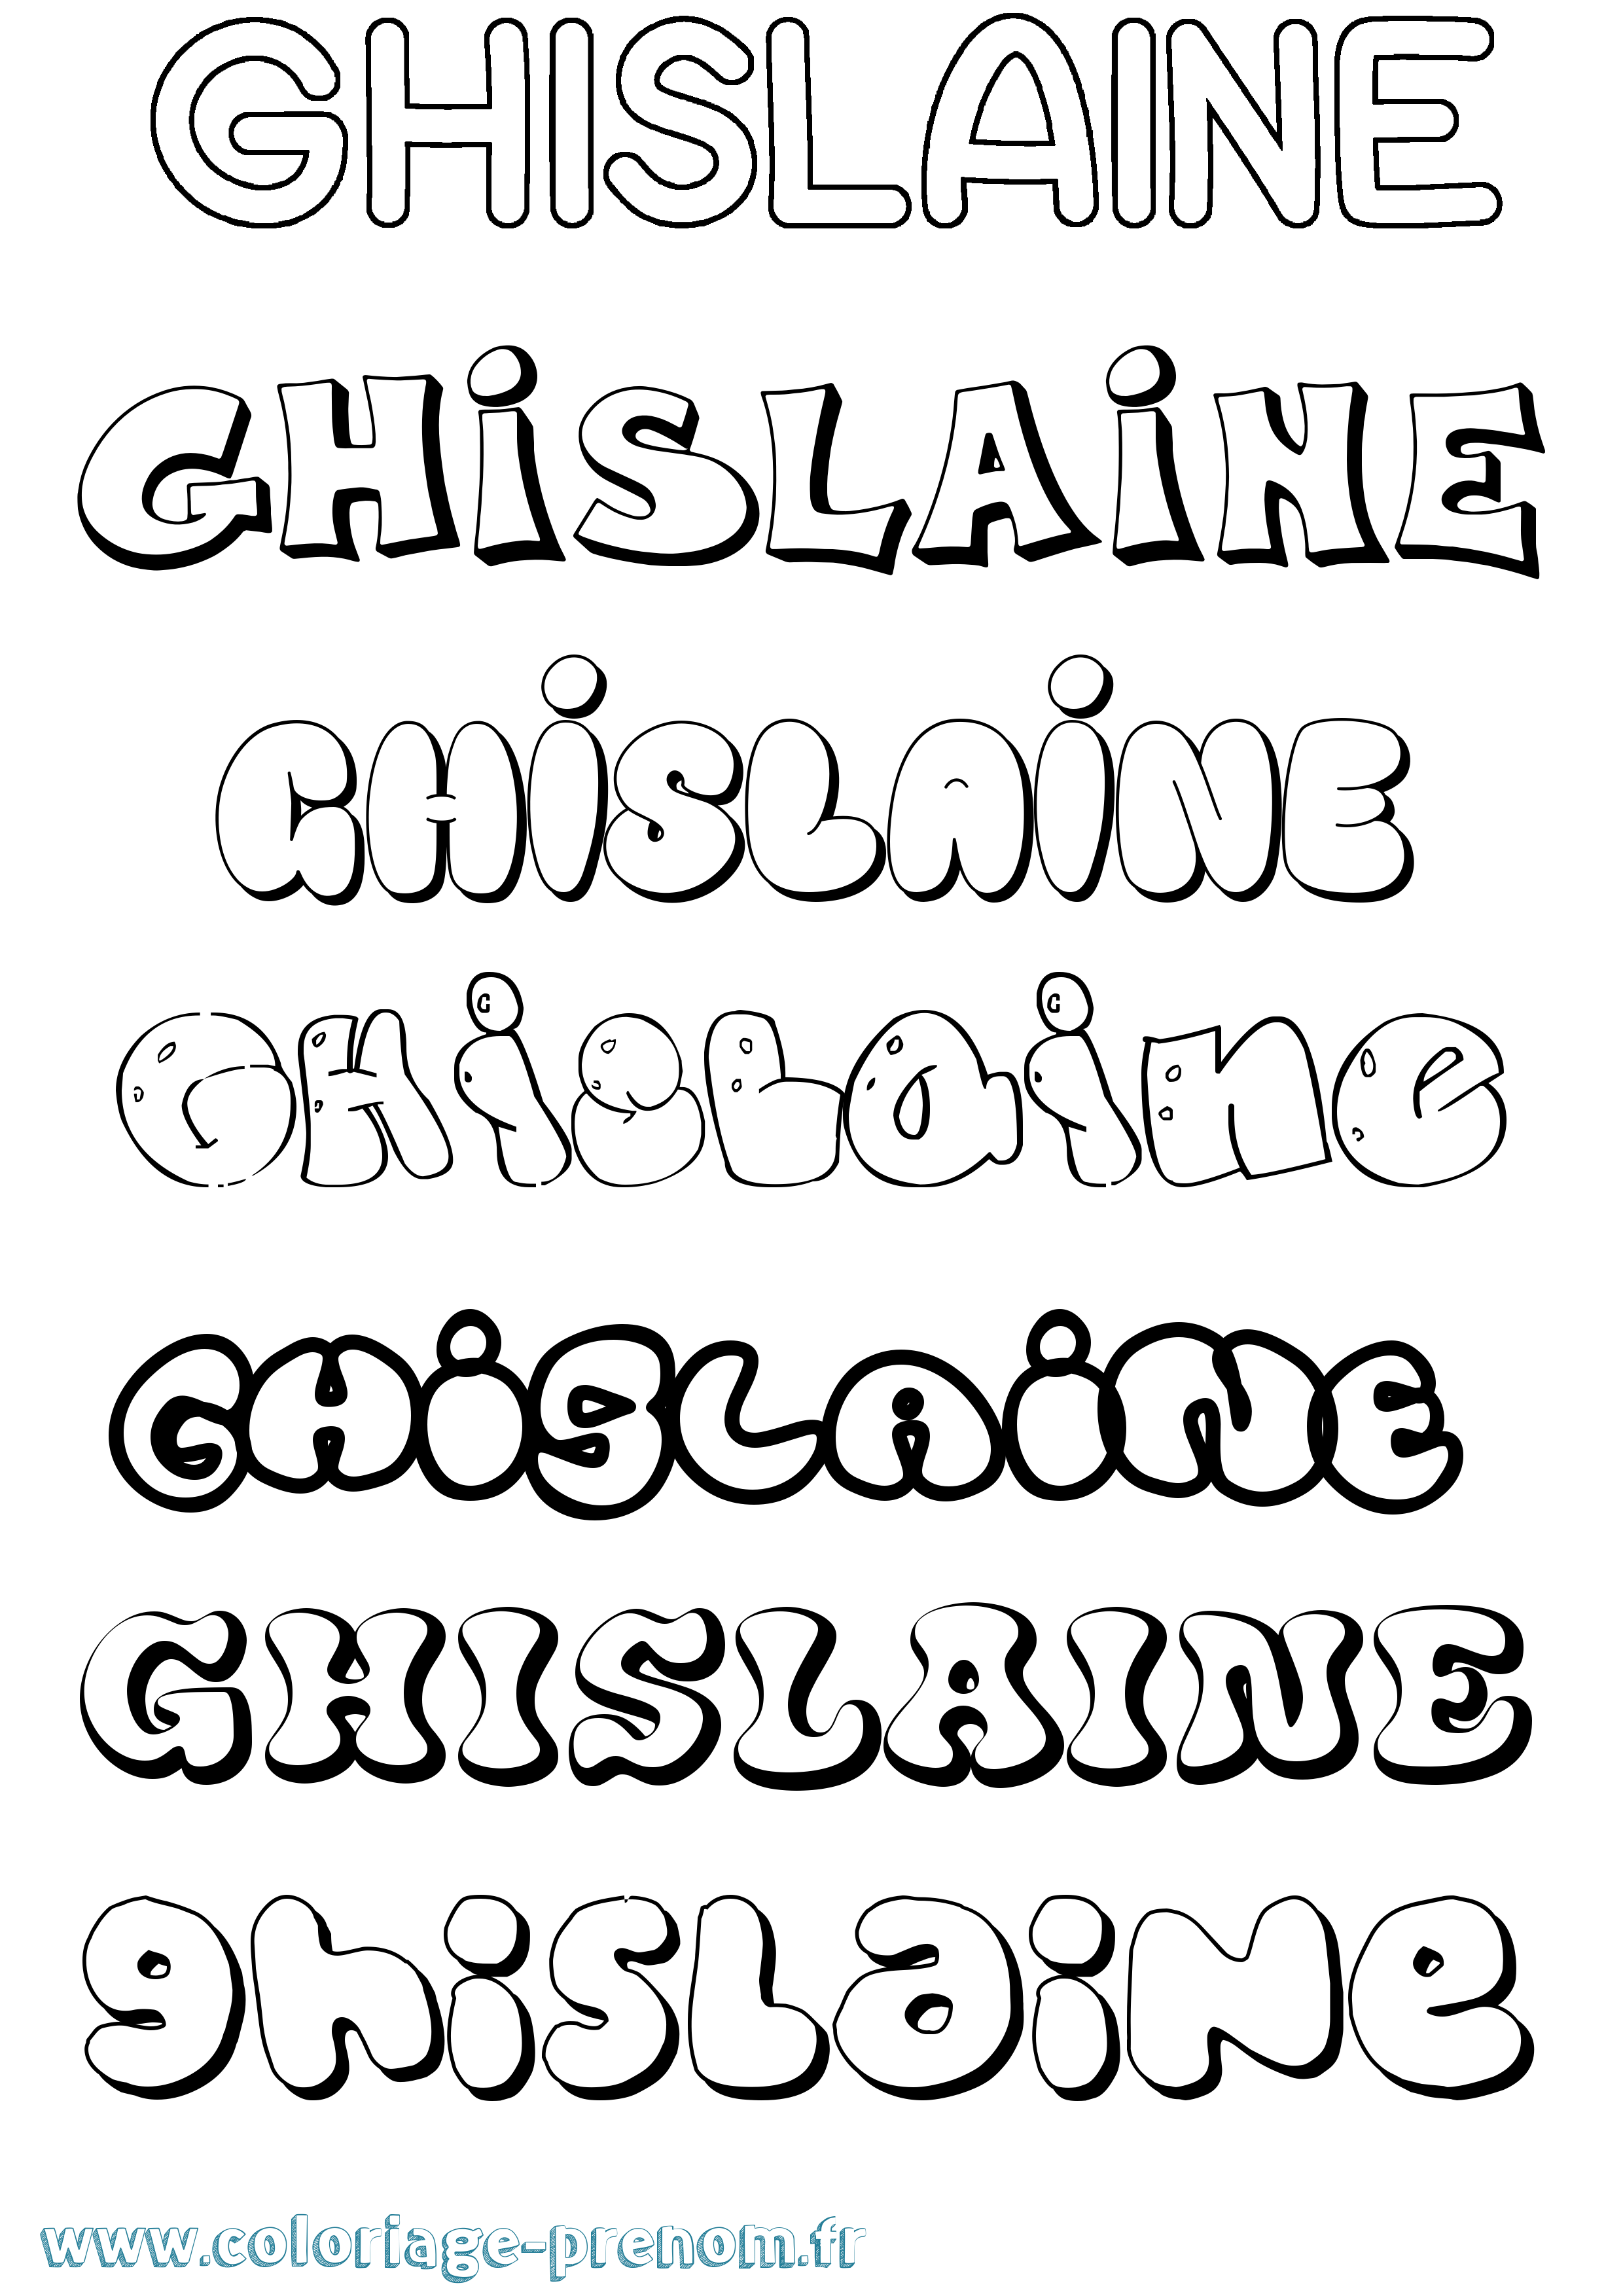 Coloriage prénom Ghislaine Bubble